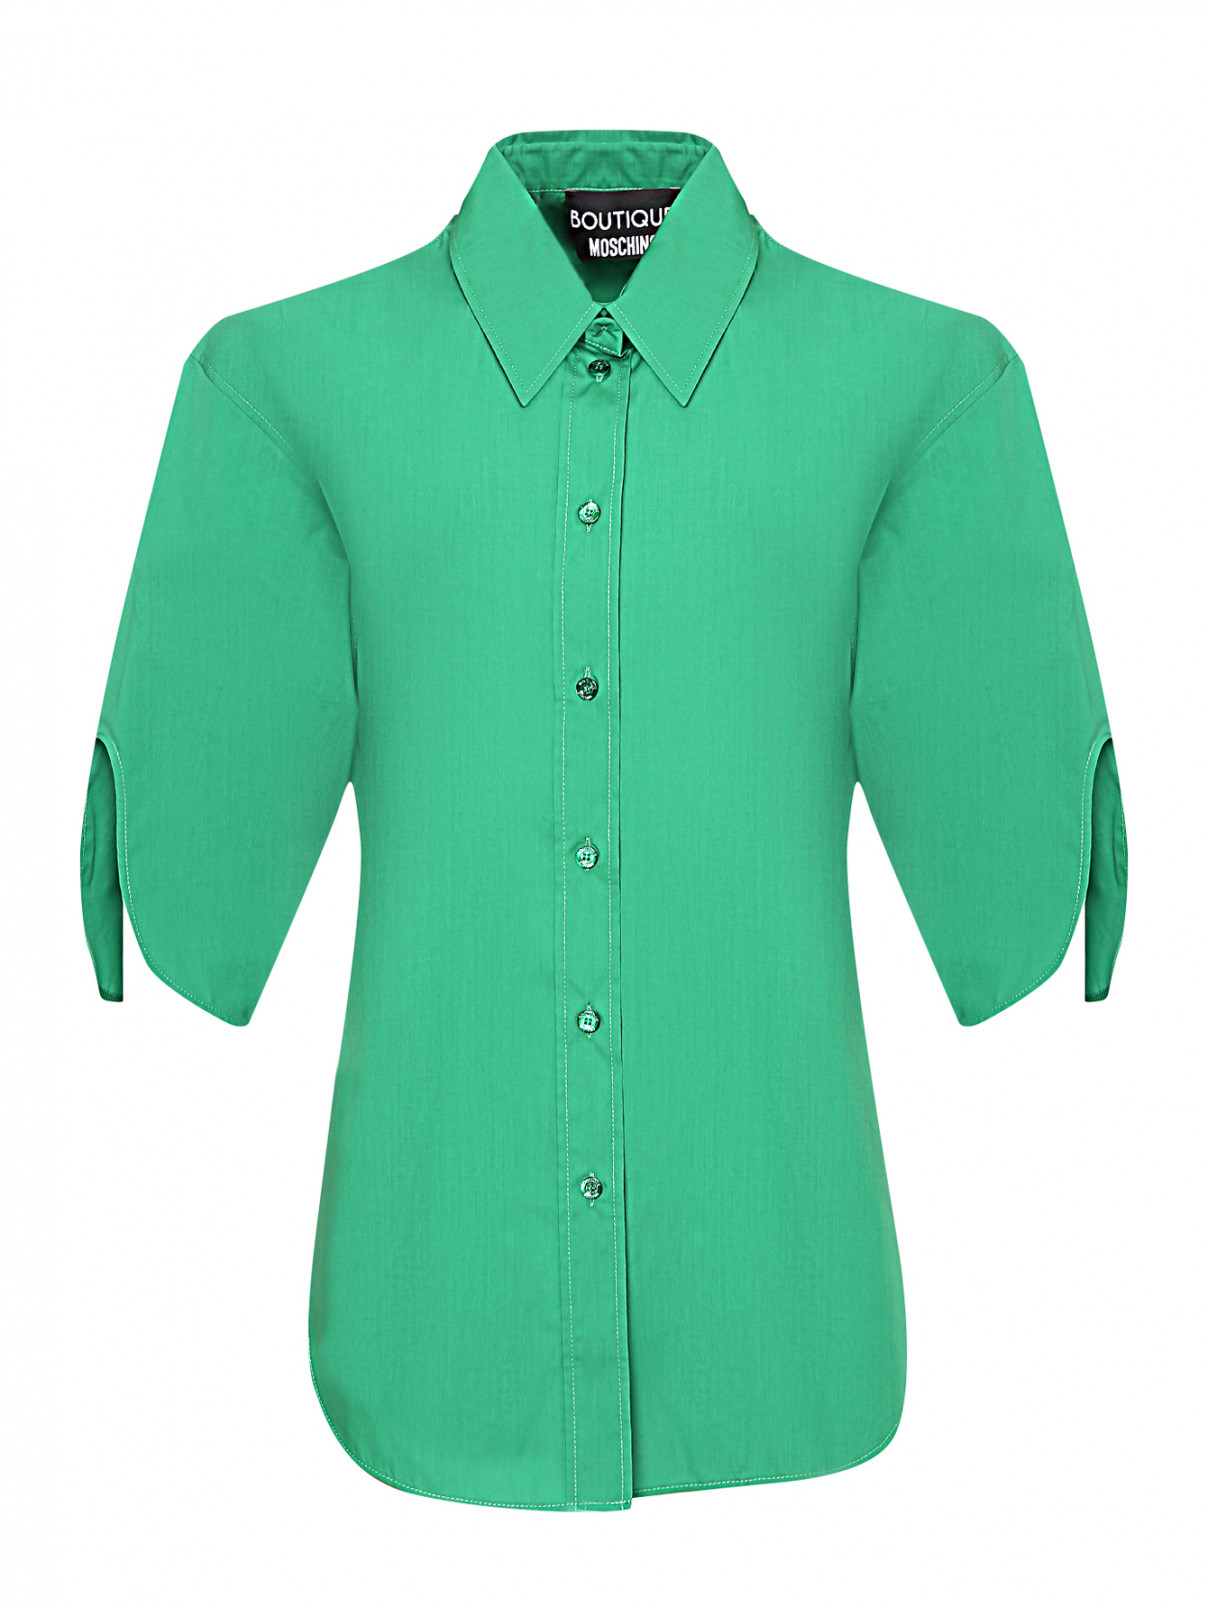 Блуза из хлопка с вырезами на рукавах Moschino Boutique  –  Общий вид  – Цвет:  Зеленый